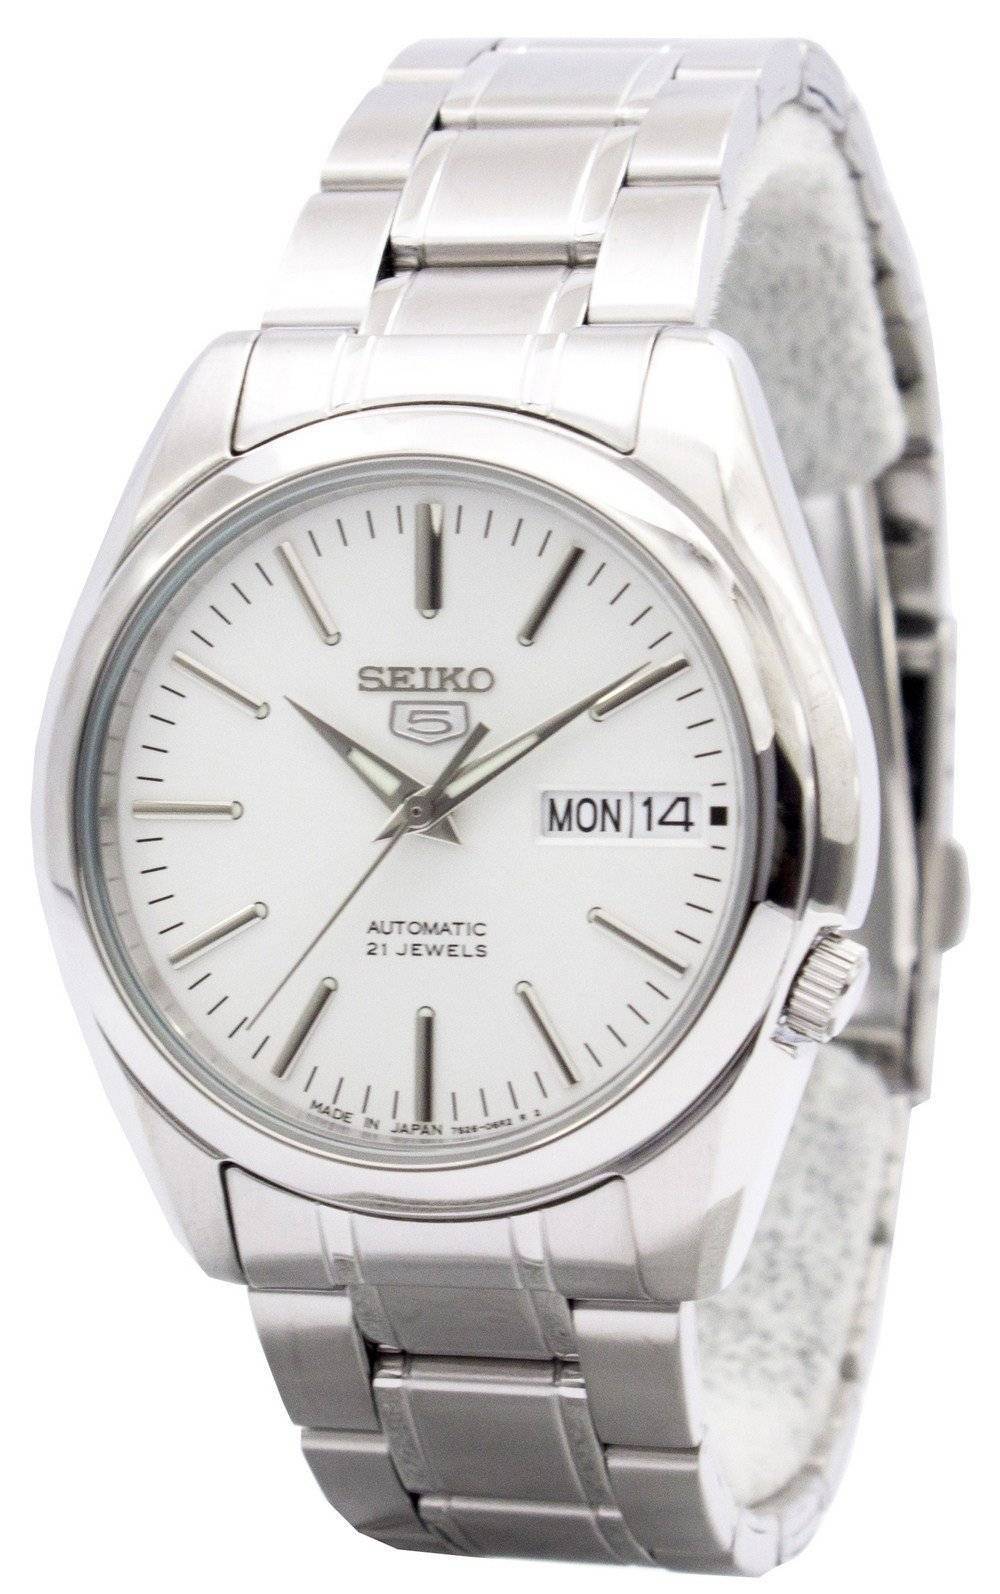 Đồng hồ Seiko Nhật Bản đã làm - Đồng hồ Seiko grand, Automatic, Brightz  Alpinst.